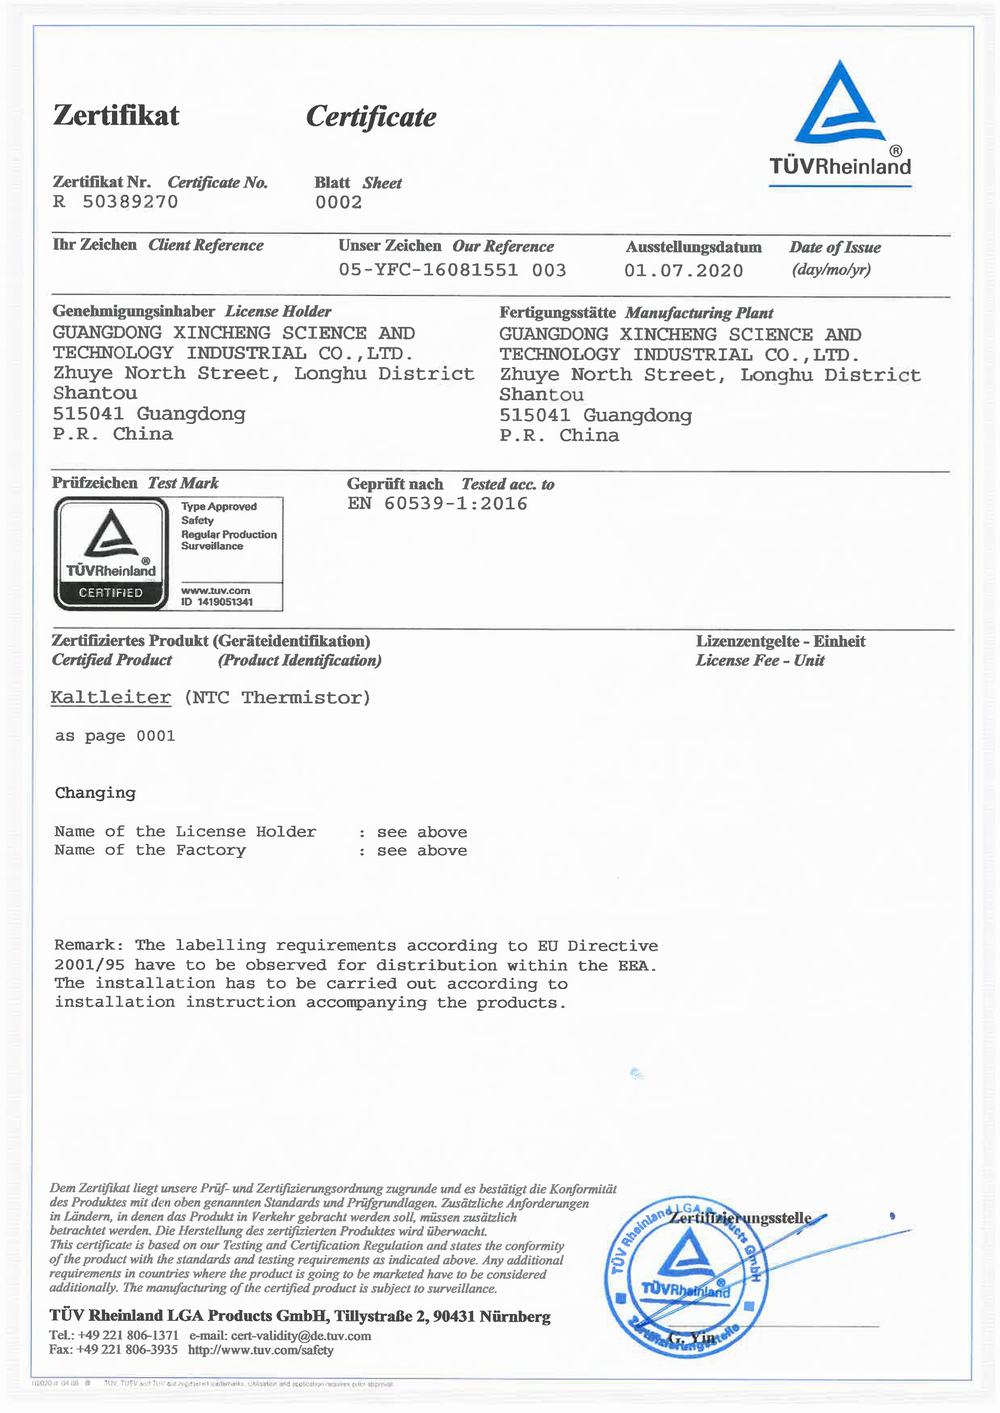 Thermal NTC-TUV certificate